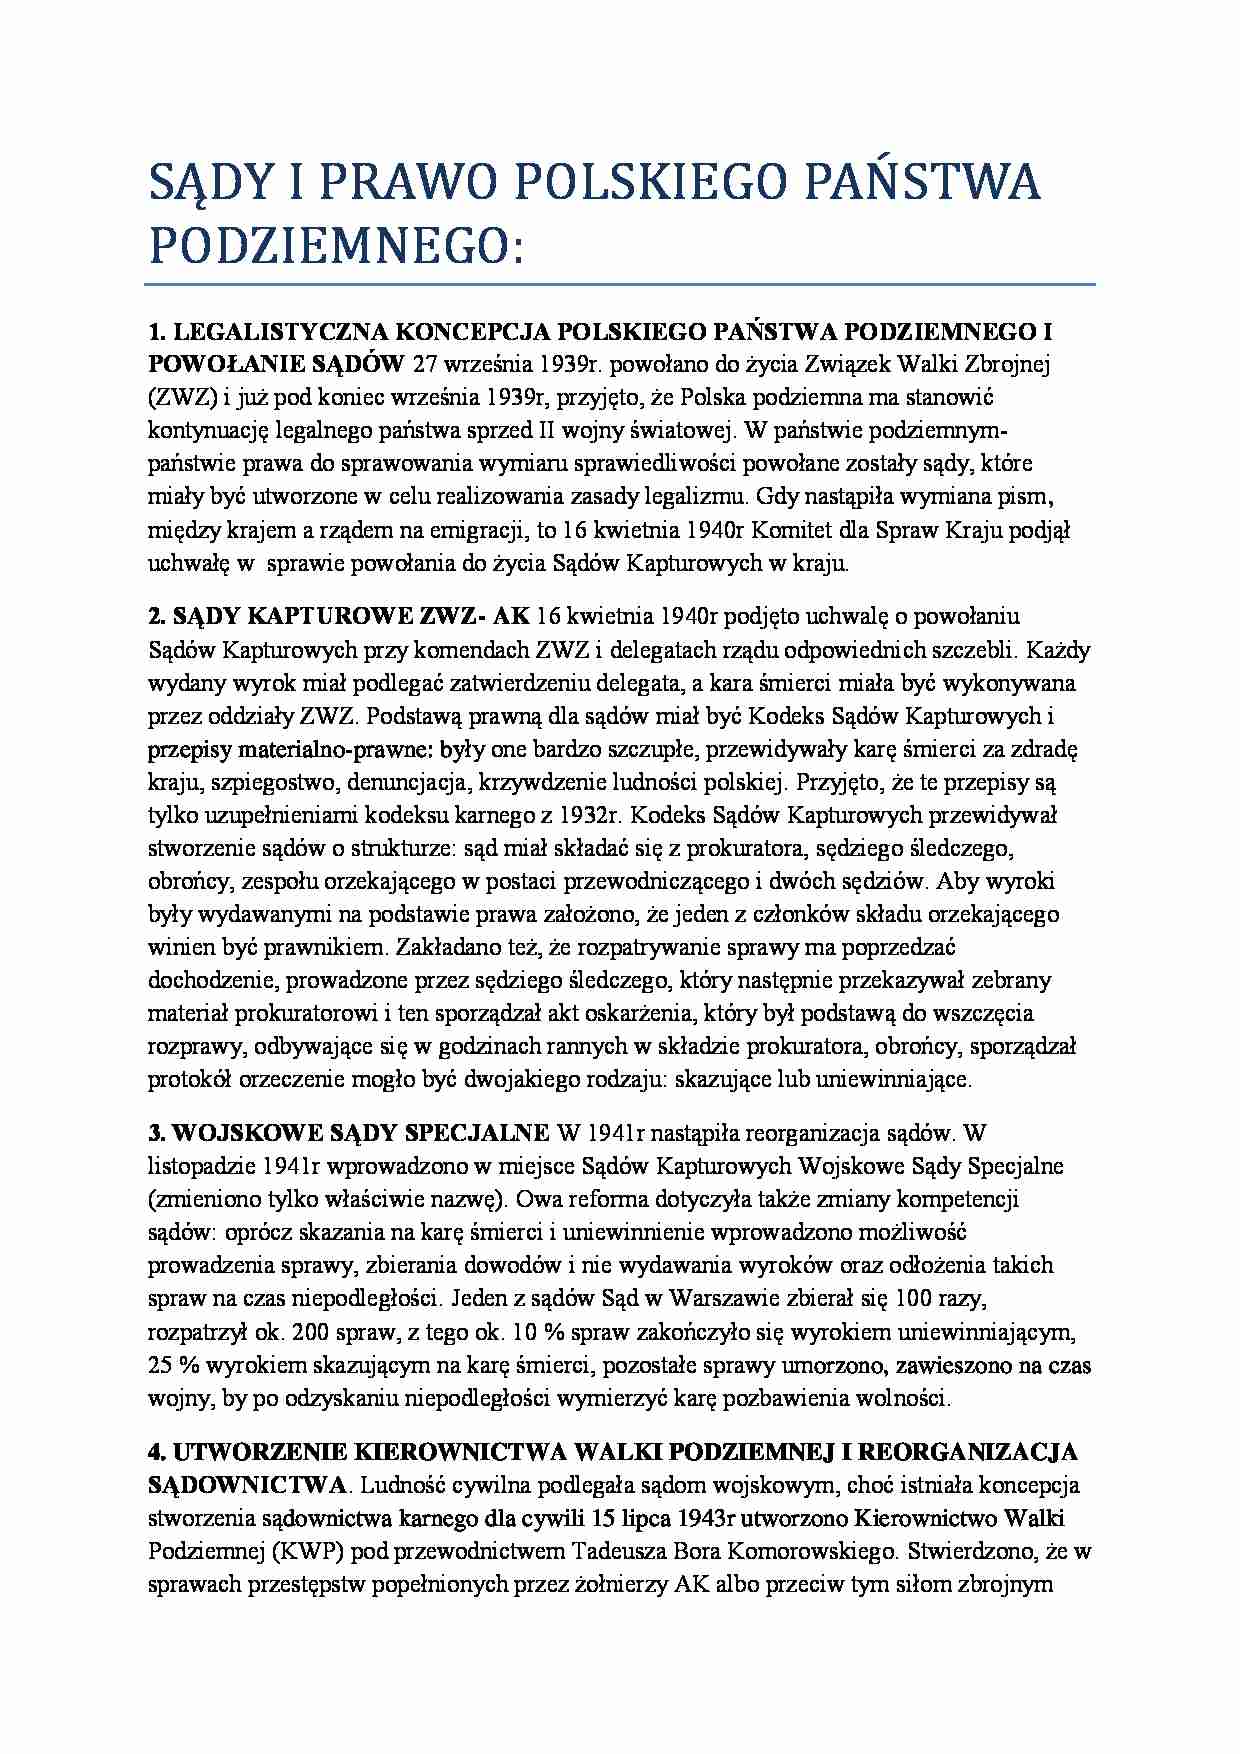 Historia państwa i prawa polskiego - SĄDY I PRAWO POLSKIEGO PAŃSTWA PODZIEMNEGO - strona 1